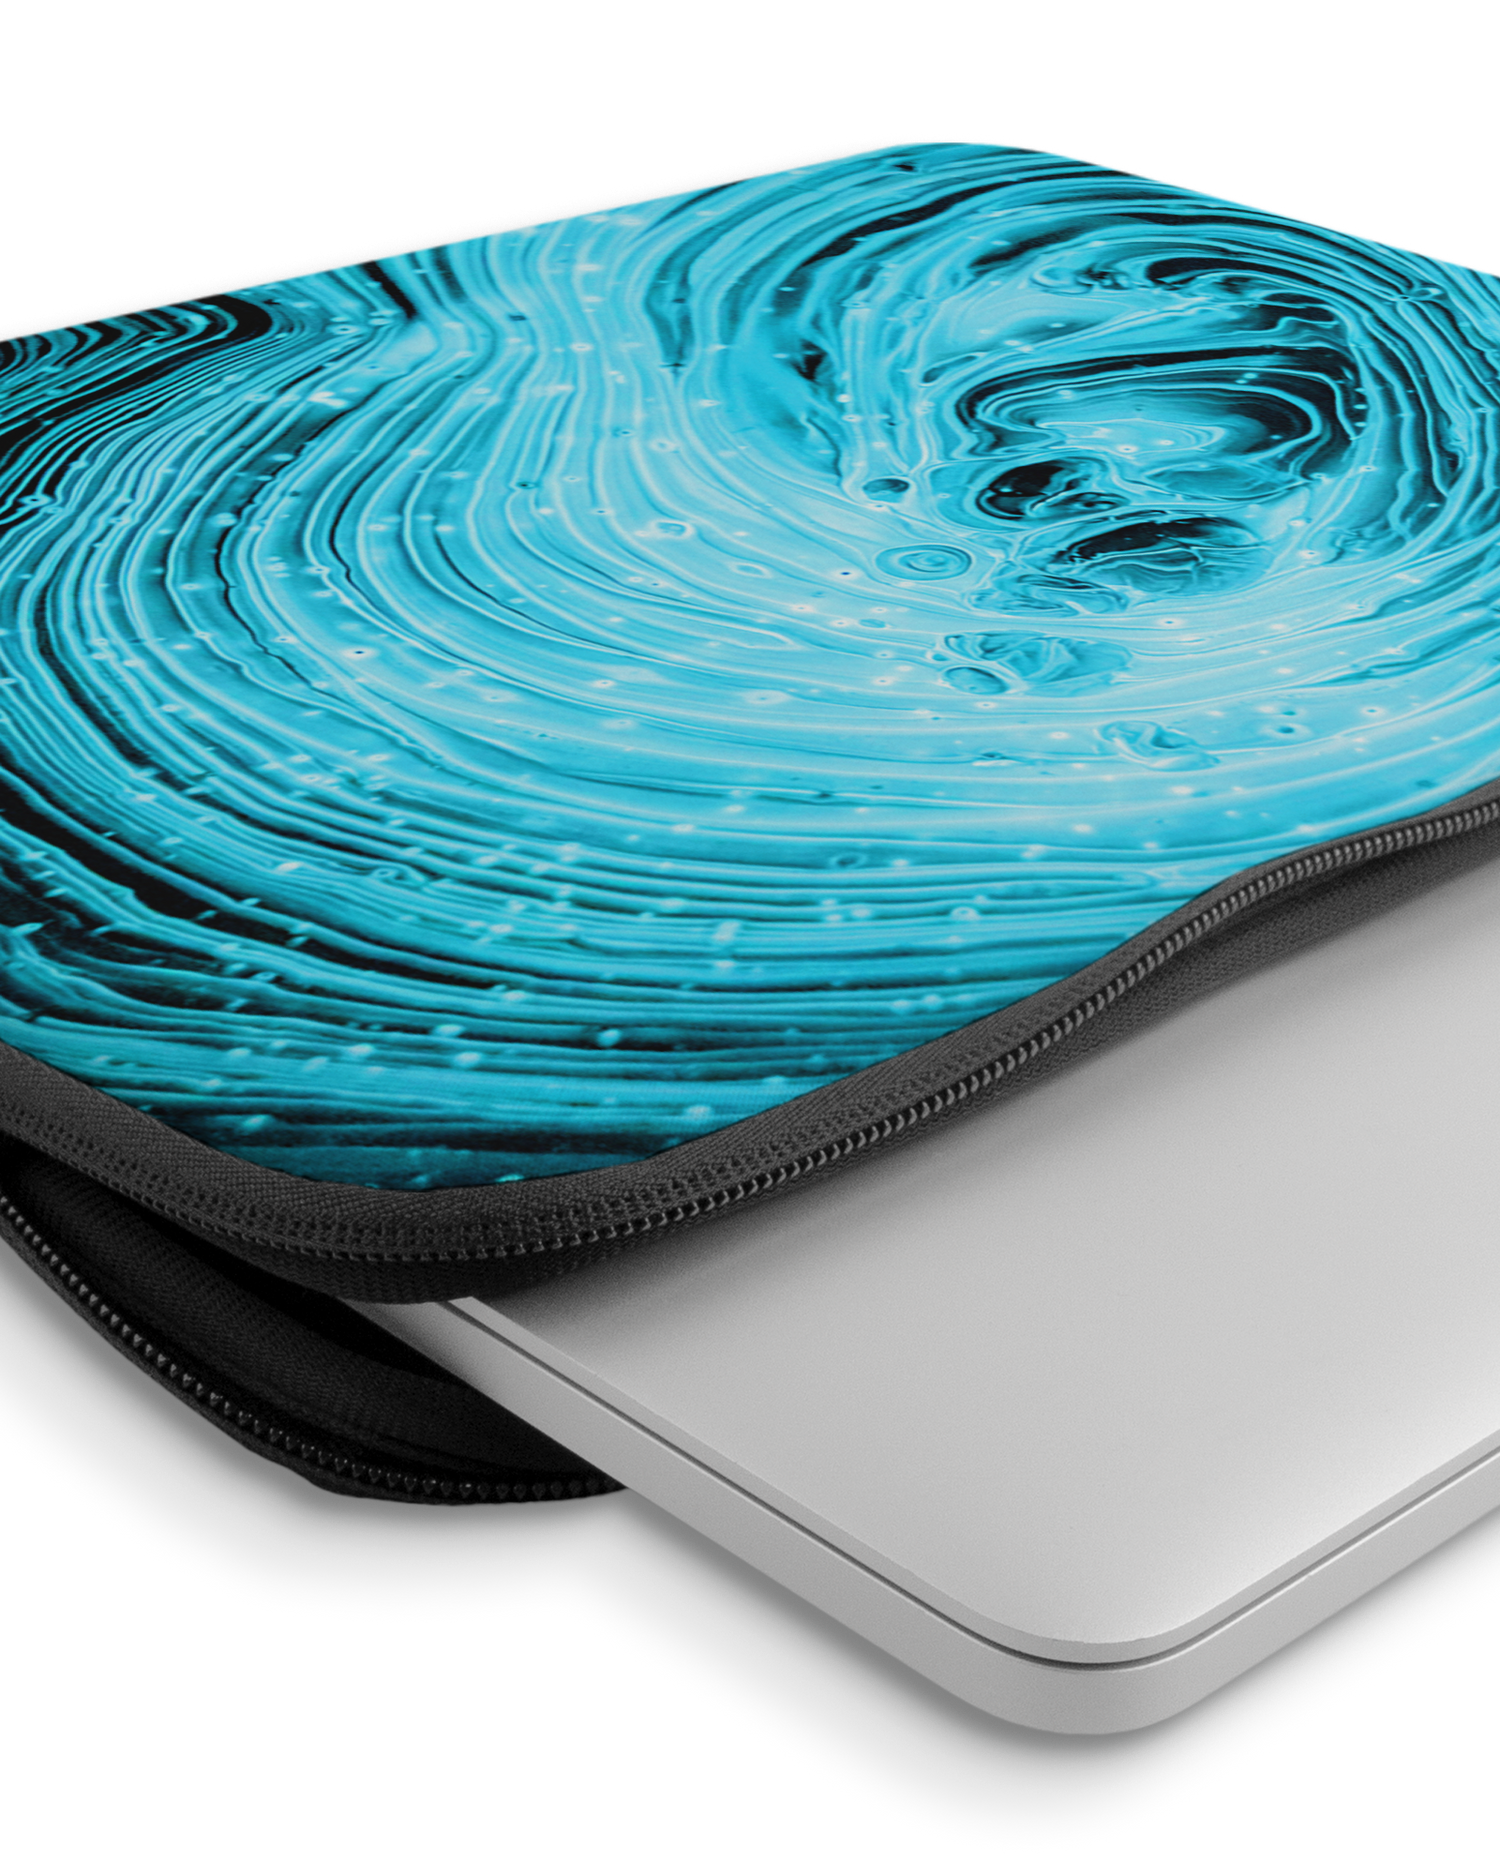 Turquoise Ripples Laptophülle 14-15 Zoll mit Gerät im Inneren